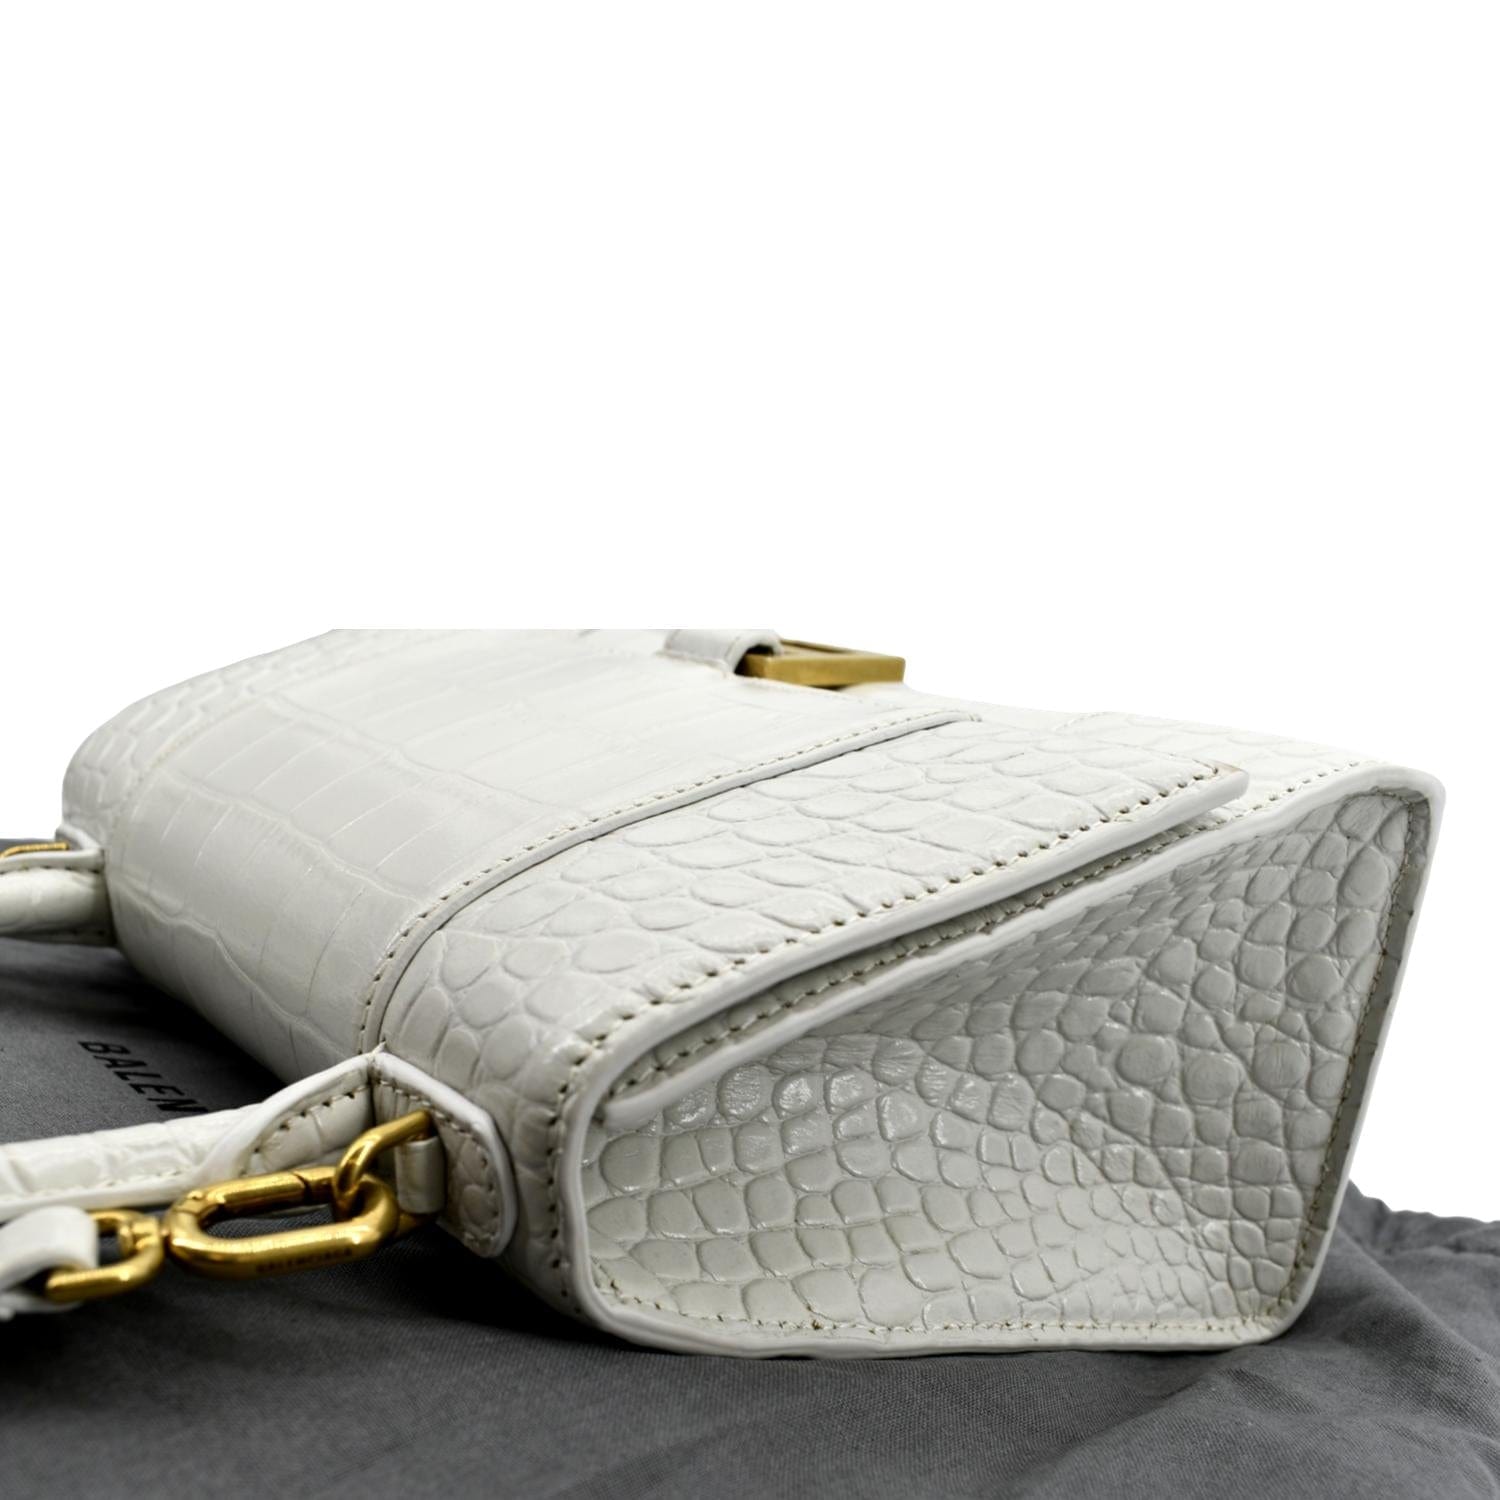 Crocodile Embossed Leather Bag